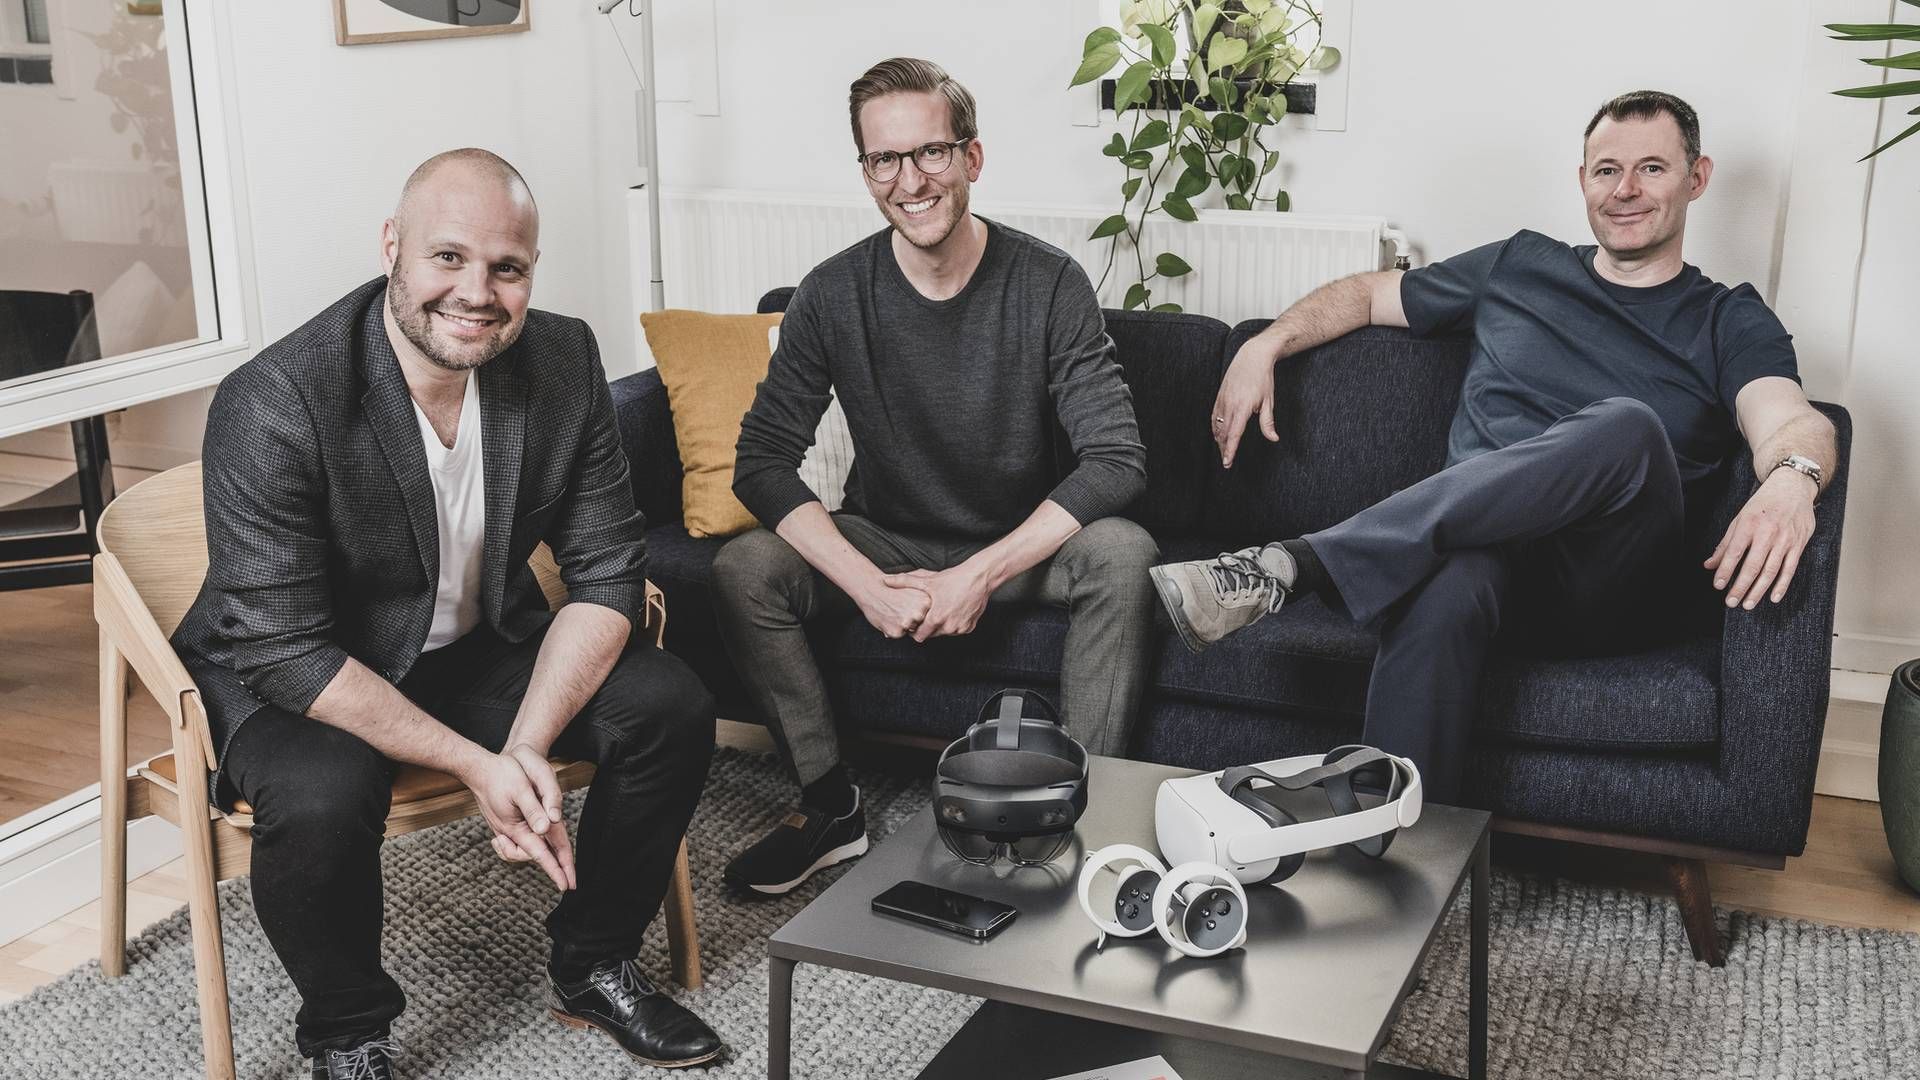 Ledelsen i SynergyXR, som har fået tilført ny kapital. Fra venstre mod højre: Mads Troelsgaard (CEO), Sune Wolff (CTO) og Thomas Fenger (CXO) | Foto: SynergyXR / PR